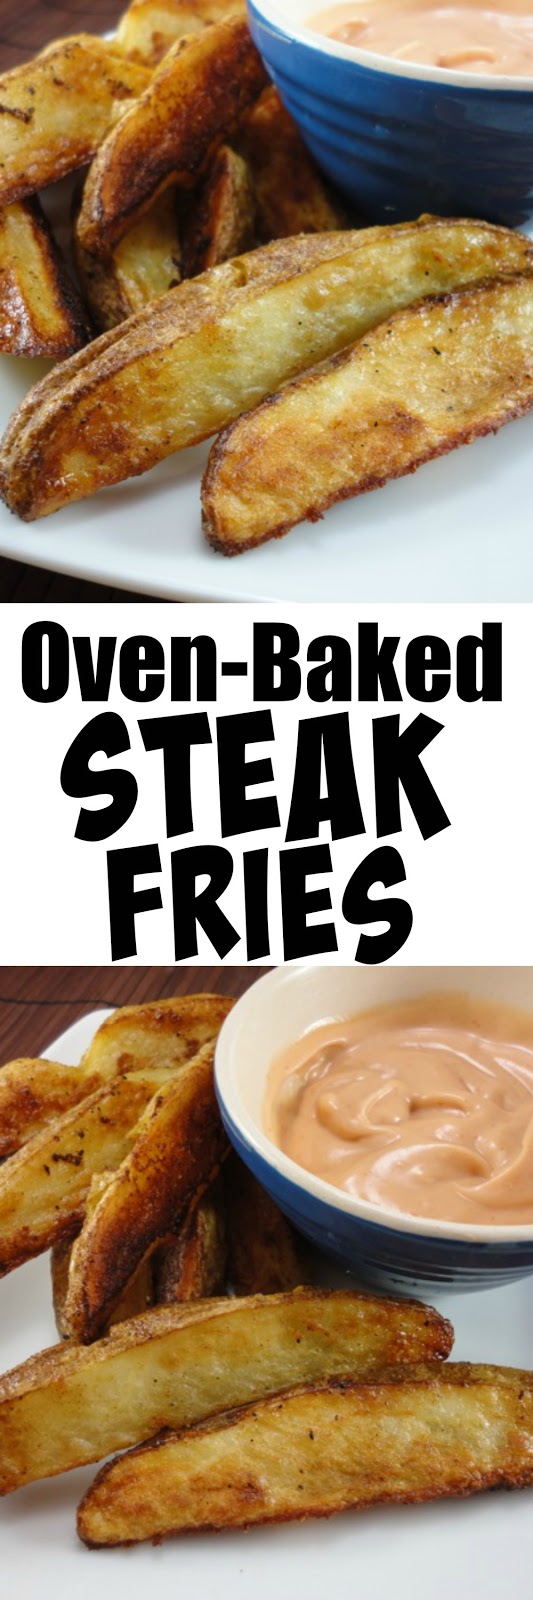 Eat Cake For Dinner: Oven-Baked Steak Fries